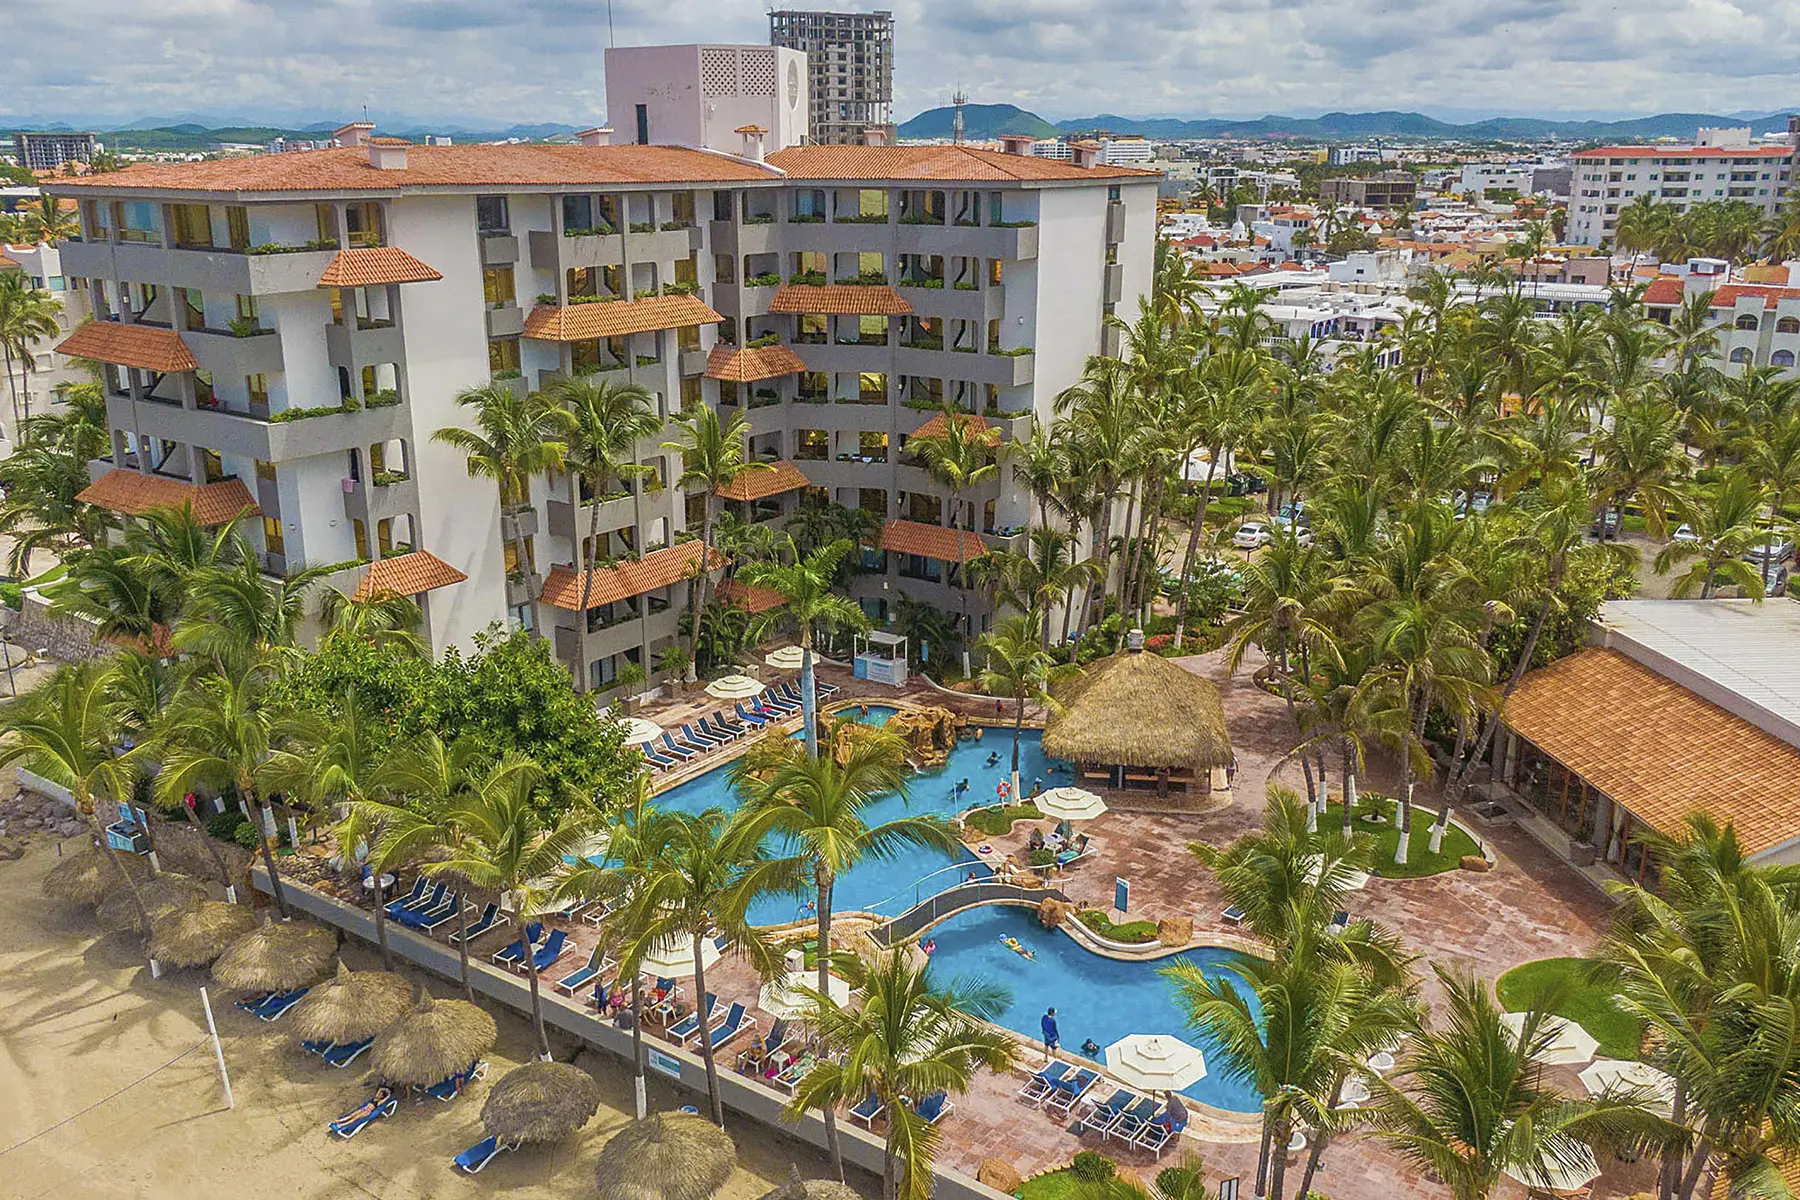 Hotel a pie de playa Luna Palace vista desde la playa gaviotas en Zona Dorada Mazatlán